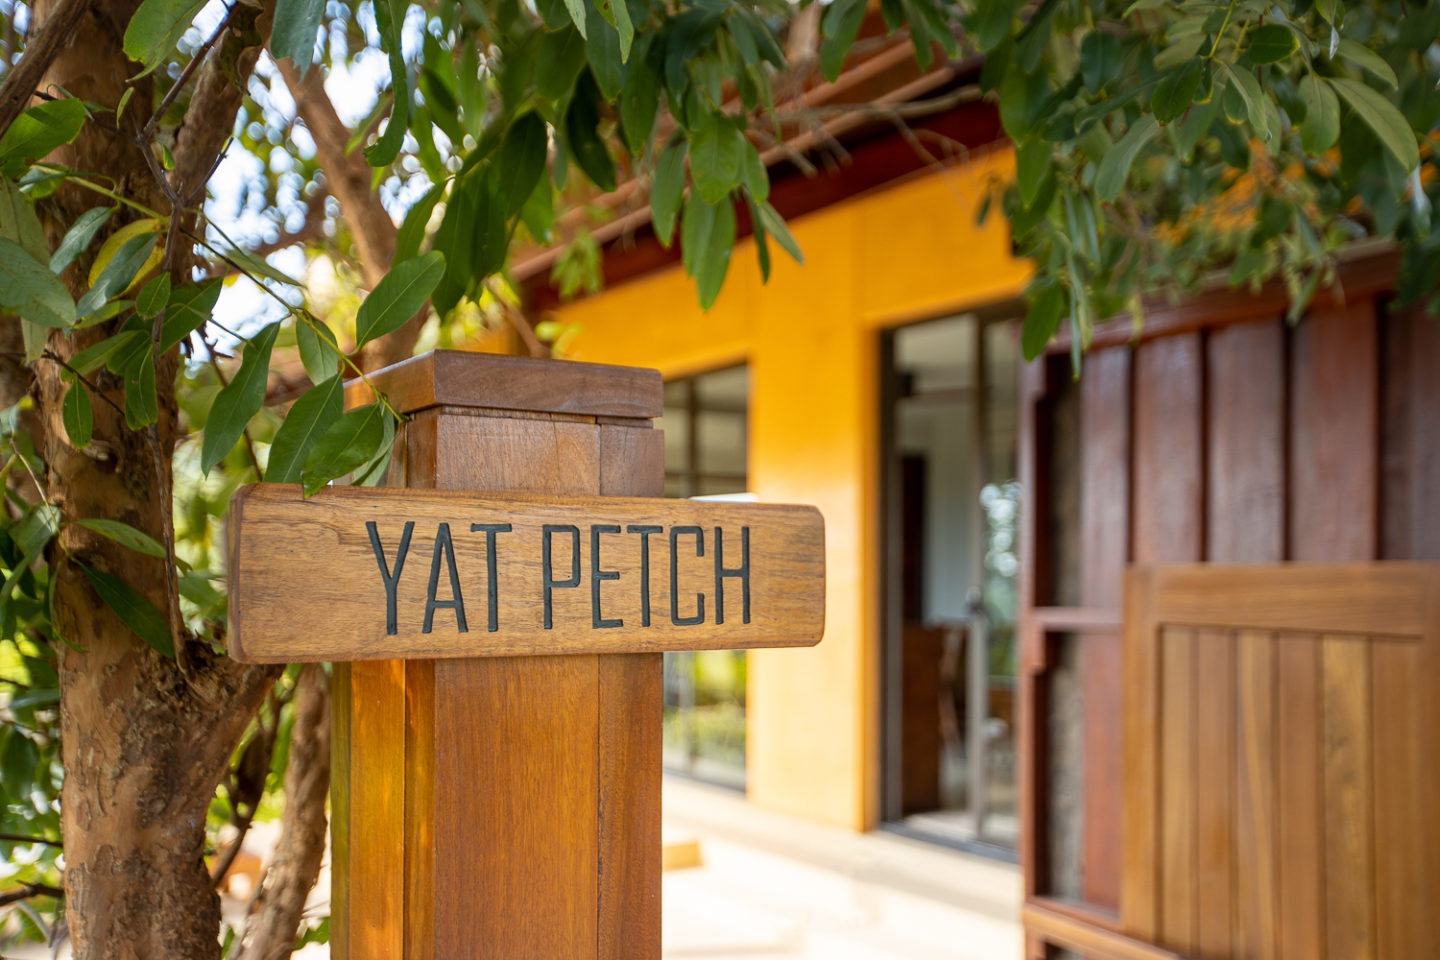 yaonoi villa yat petch entrance